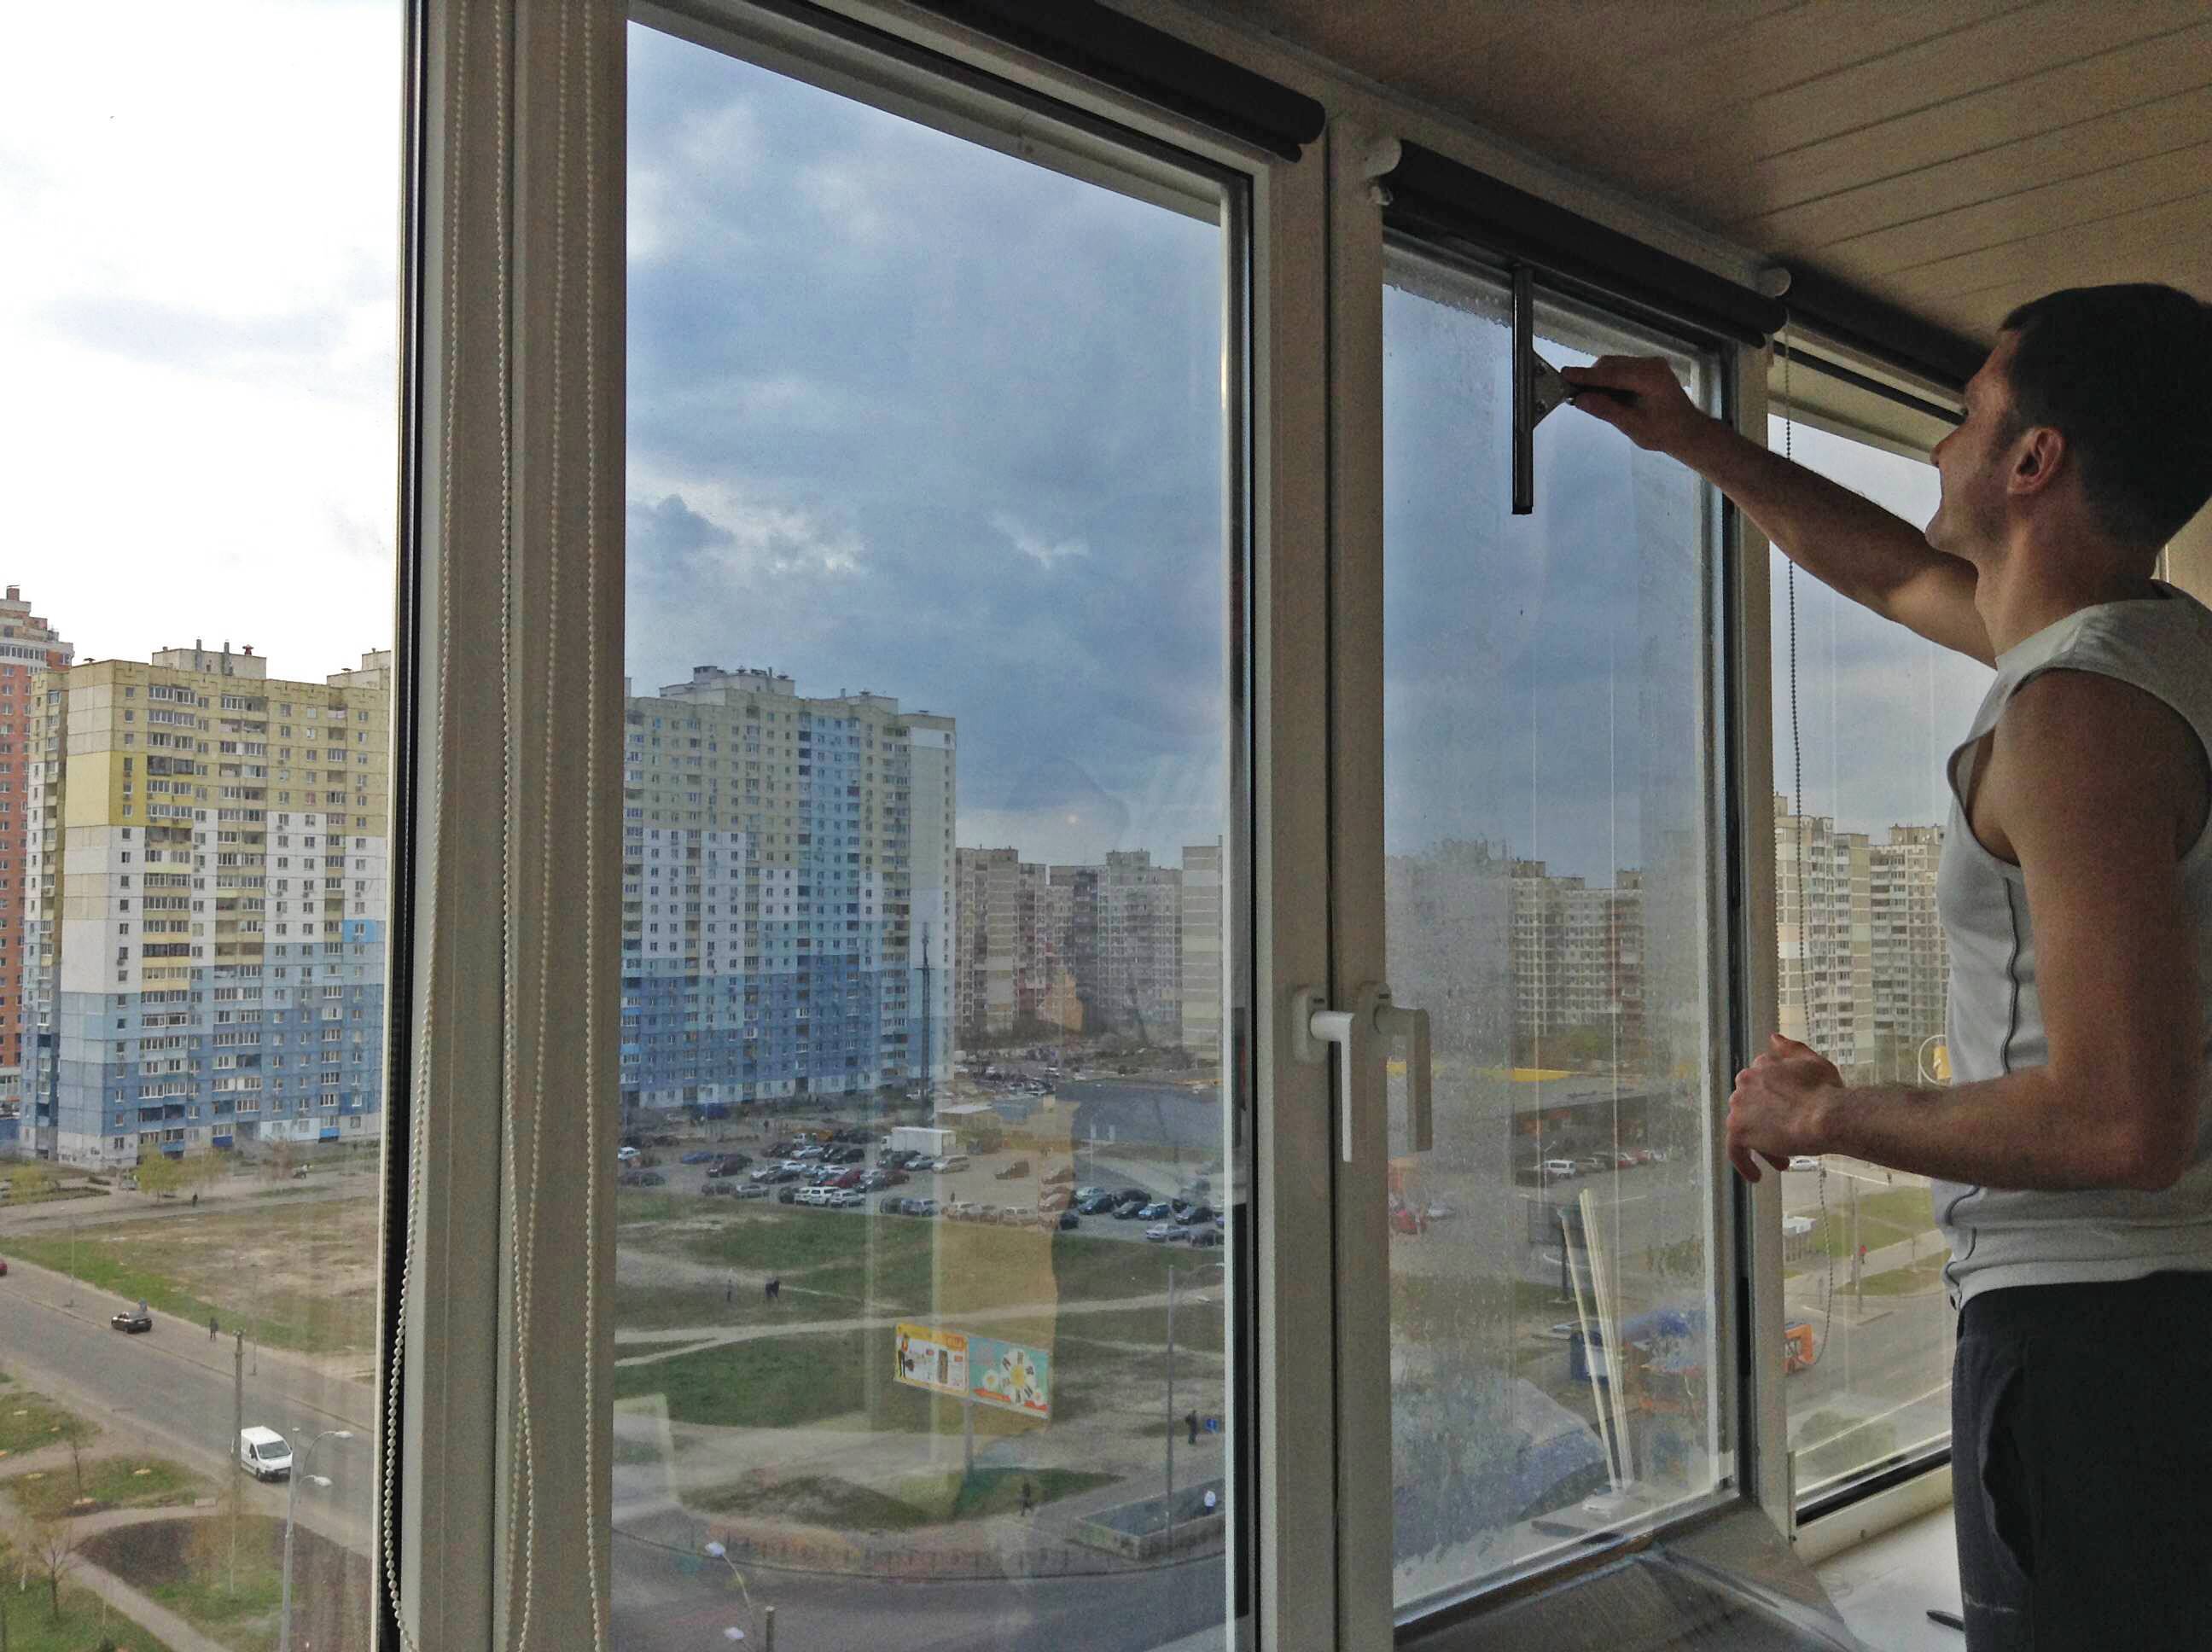 Наклеивание тонировочной пленки на окно: подробная инструкция и инструменты